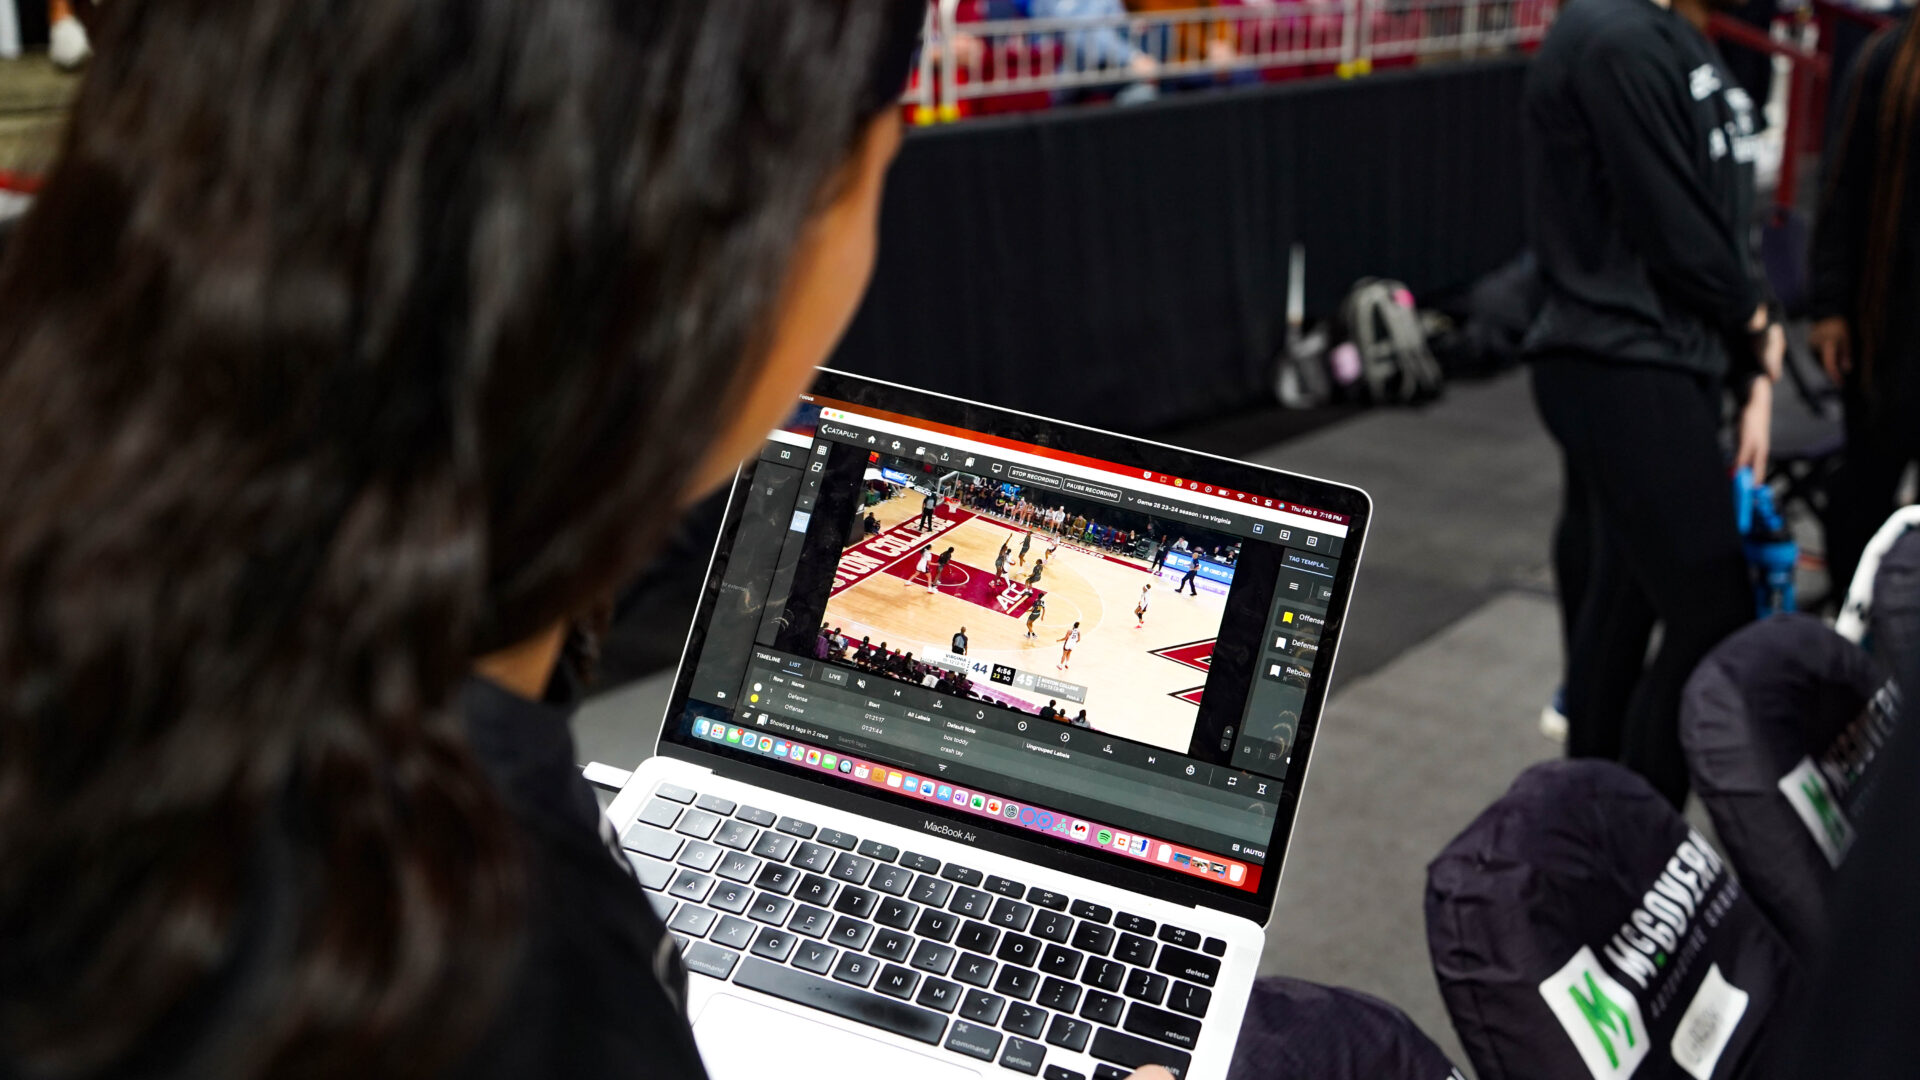 Se está llevando a cabo una interacción enfocada entre un jugador de baloncesto de Boston College y un entrenador, con el análisis Pro Video Focus visible en la pantalla del portátil. Esto destaca la integración del análisis de vídeo en vivo en su entrenamiento, crucial para mejorar el rendimiento y las tácticas en el juego.